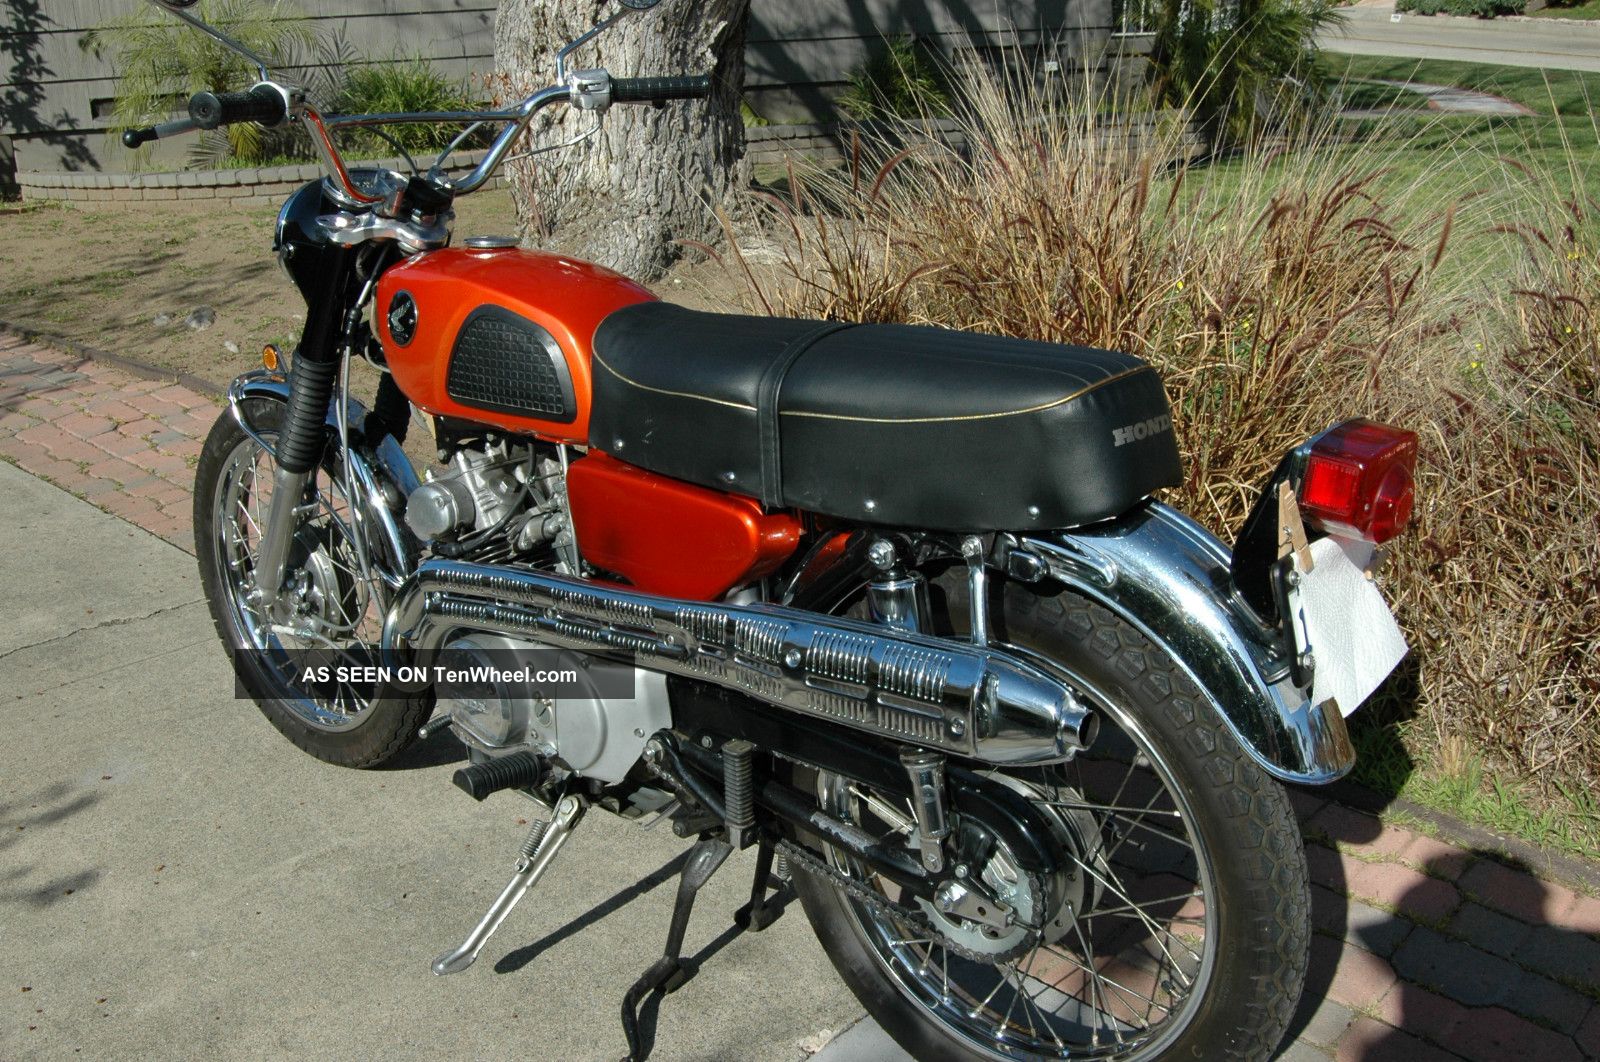 1969 Honda cl175 scrambler